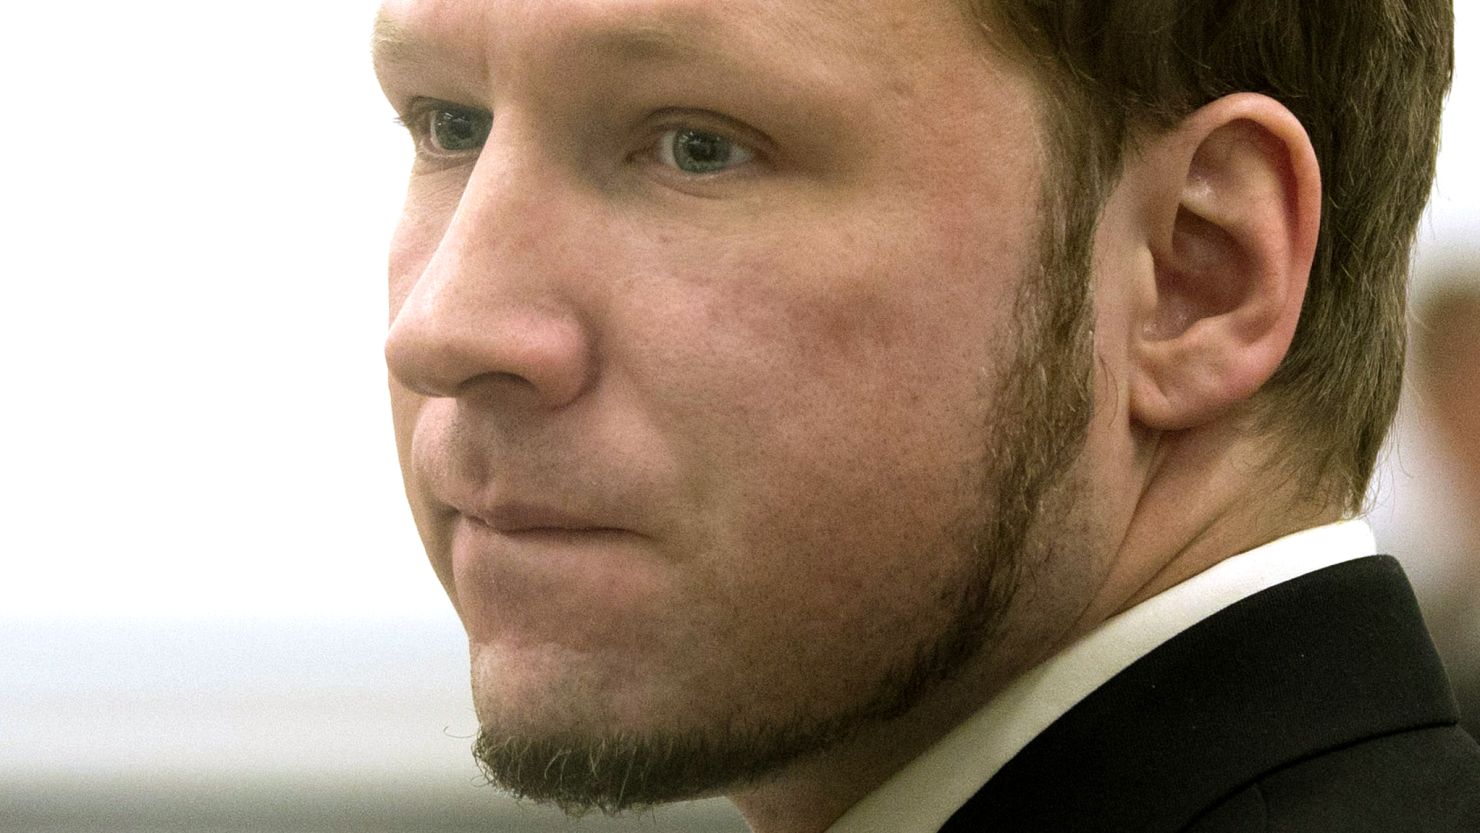 Anders Breivik was sentenced to 21 years in prison.